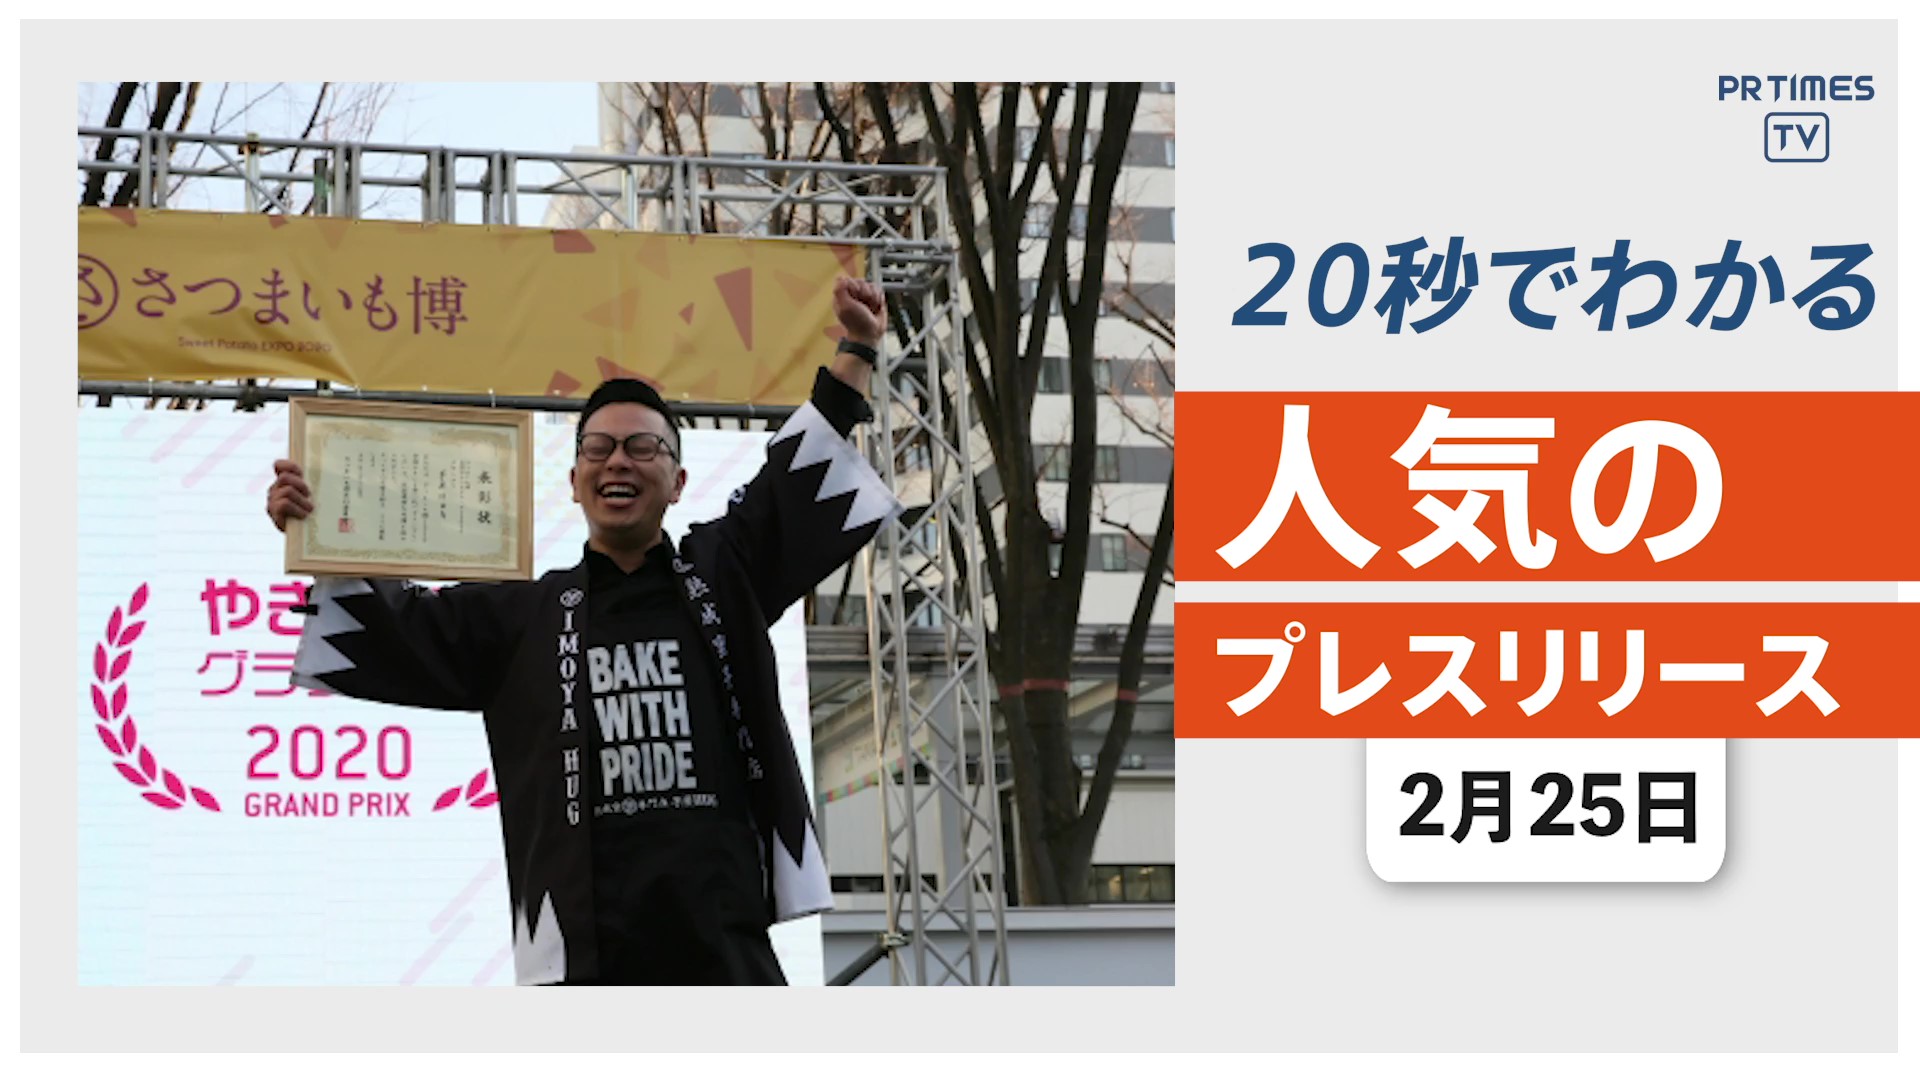 【「全国やきいもグランプリ」を開催 日本一の焼き芋が決定】他、新着トレンド2月25日